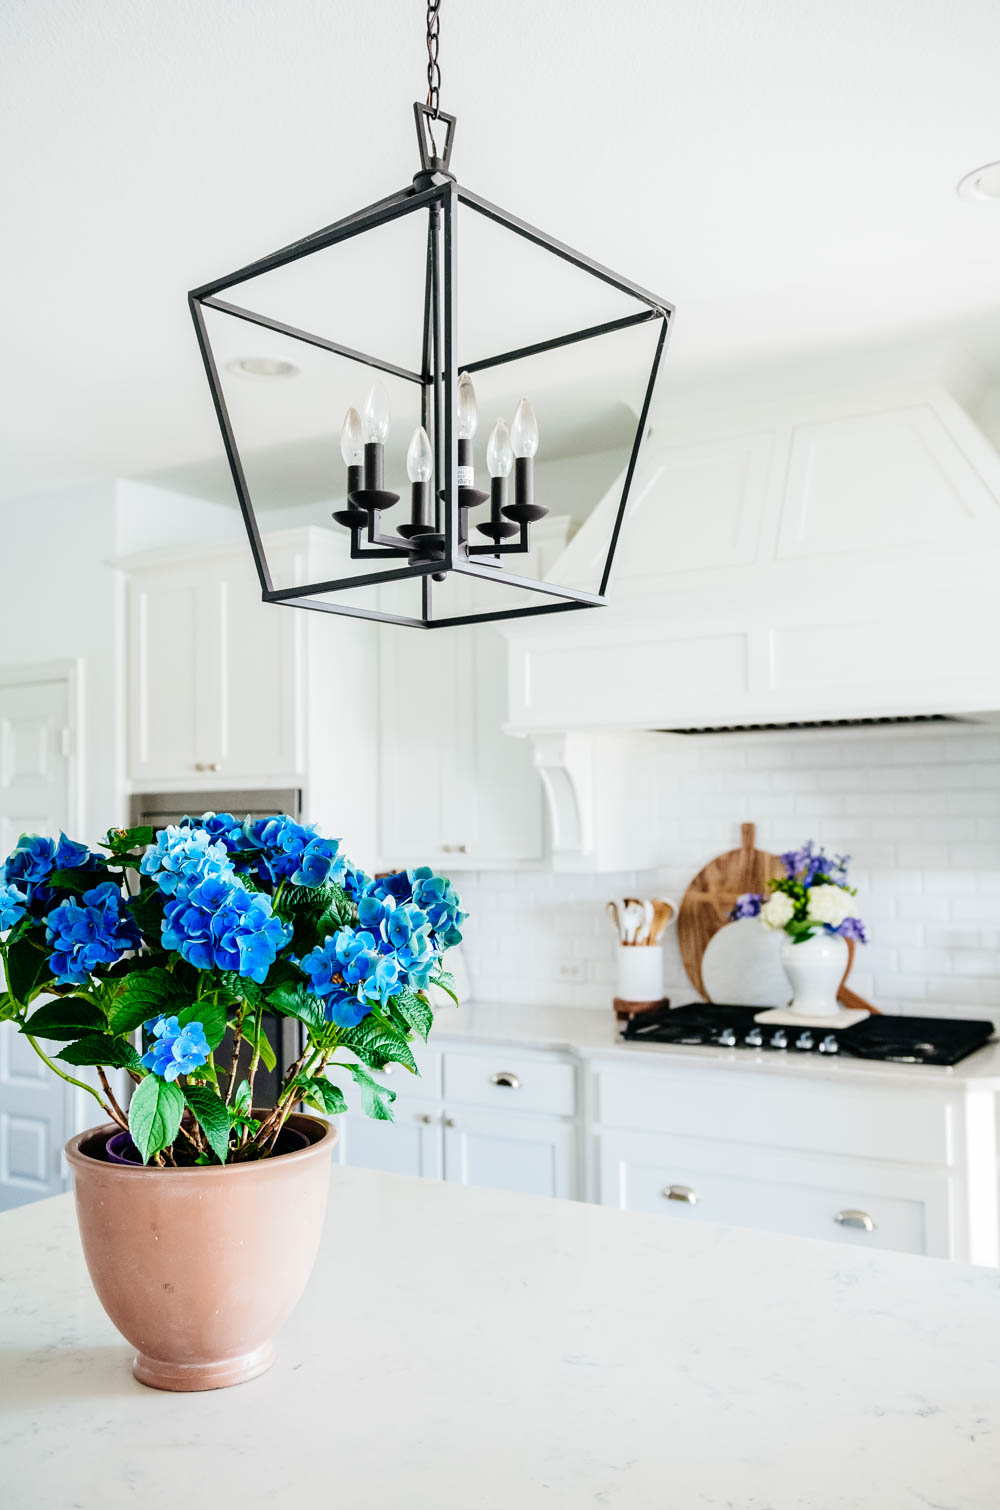 Blue hydrangea, potted plant, kitchen decor, white kitchen, kitchen style. #ABlissfulNest #whitekitchen #kitchendesign #summerkitchen